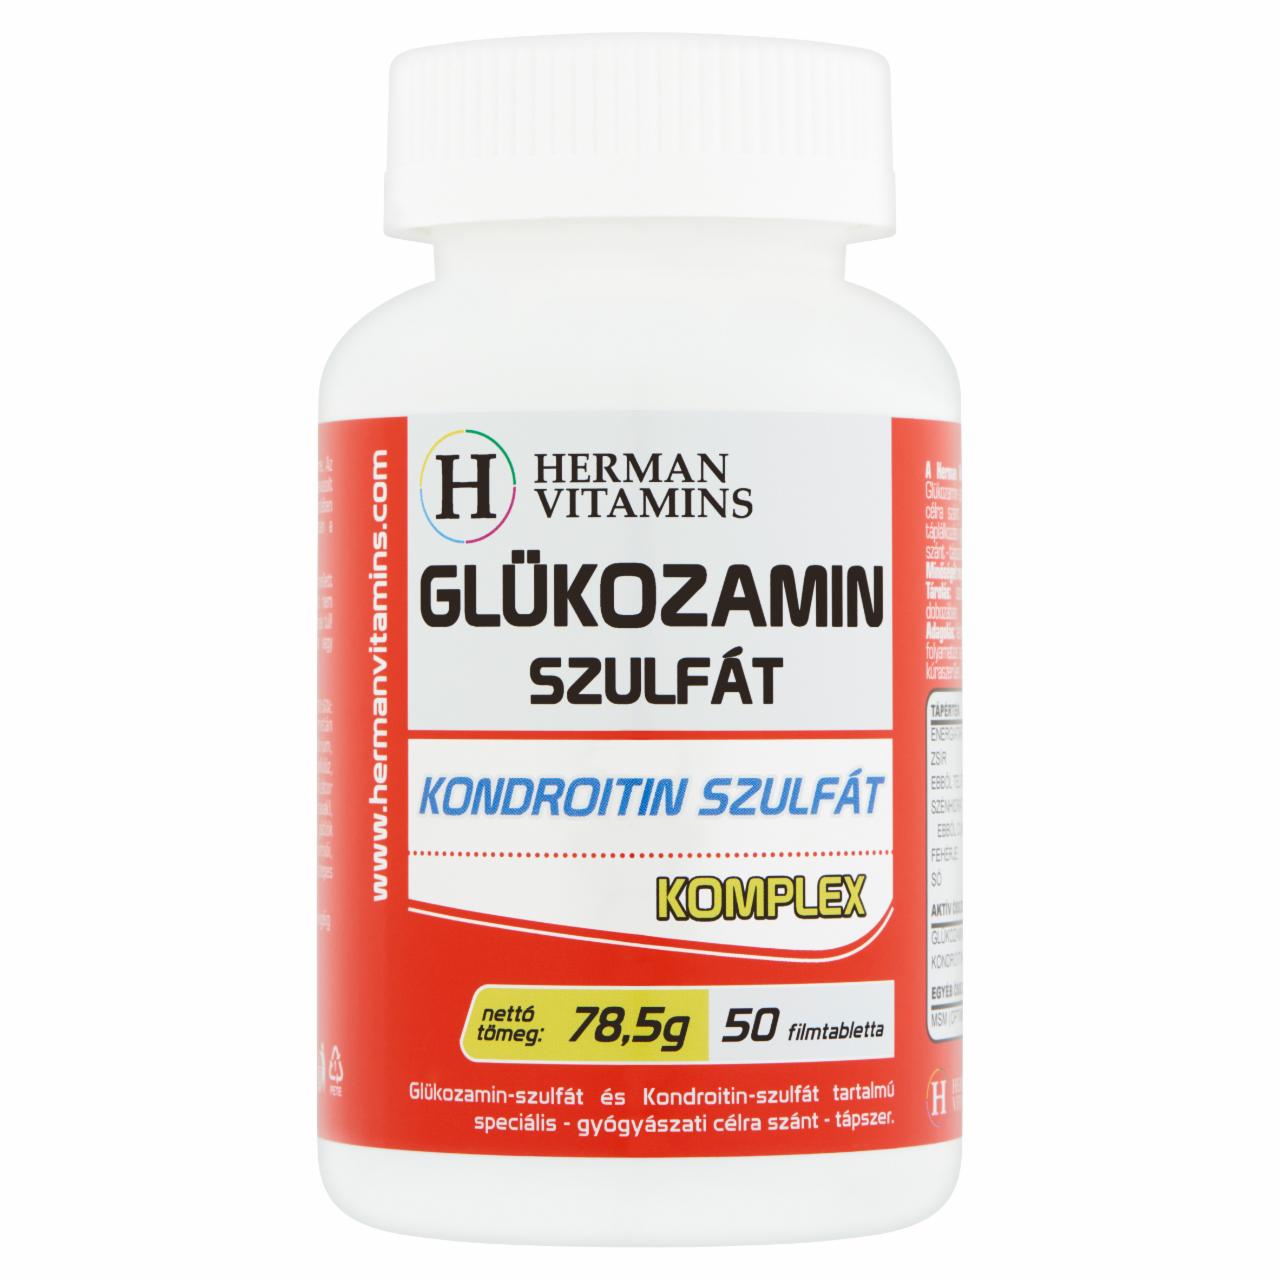 Képek - Herman Vitamins Glükozamin-szulfát Kondroitin-szulfát komplex speciális tápszer 50 db 78,5 g